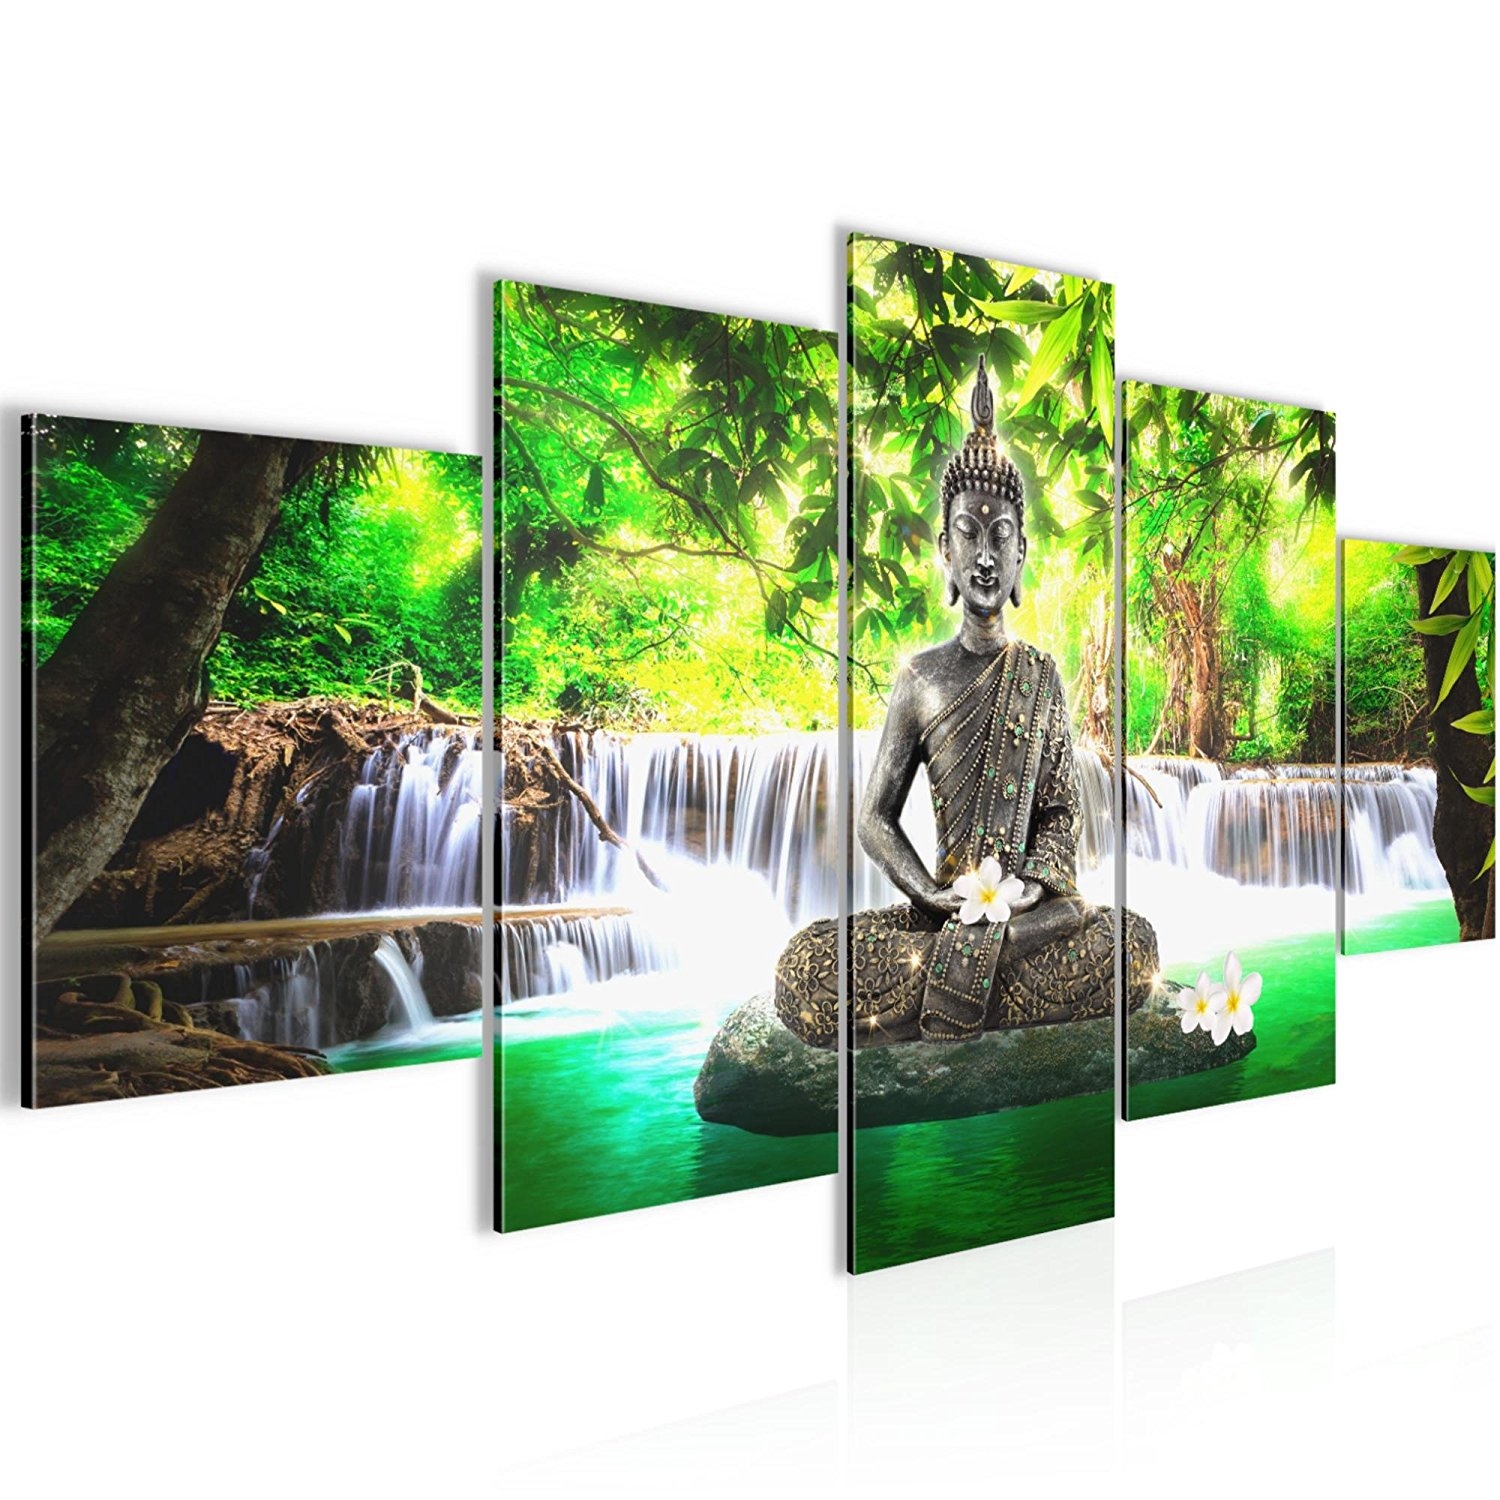 Dor Vorige Haringen Boeddha Waterval 200 x 100 cm - Gratis verzending!